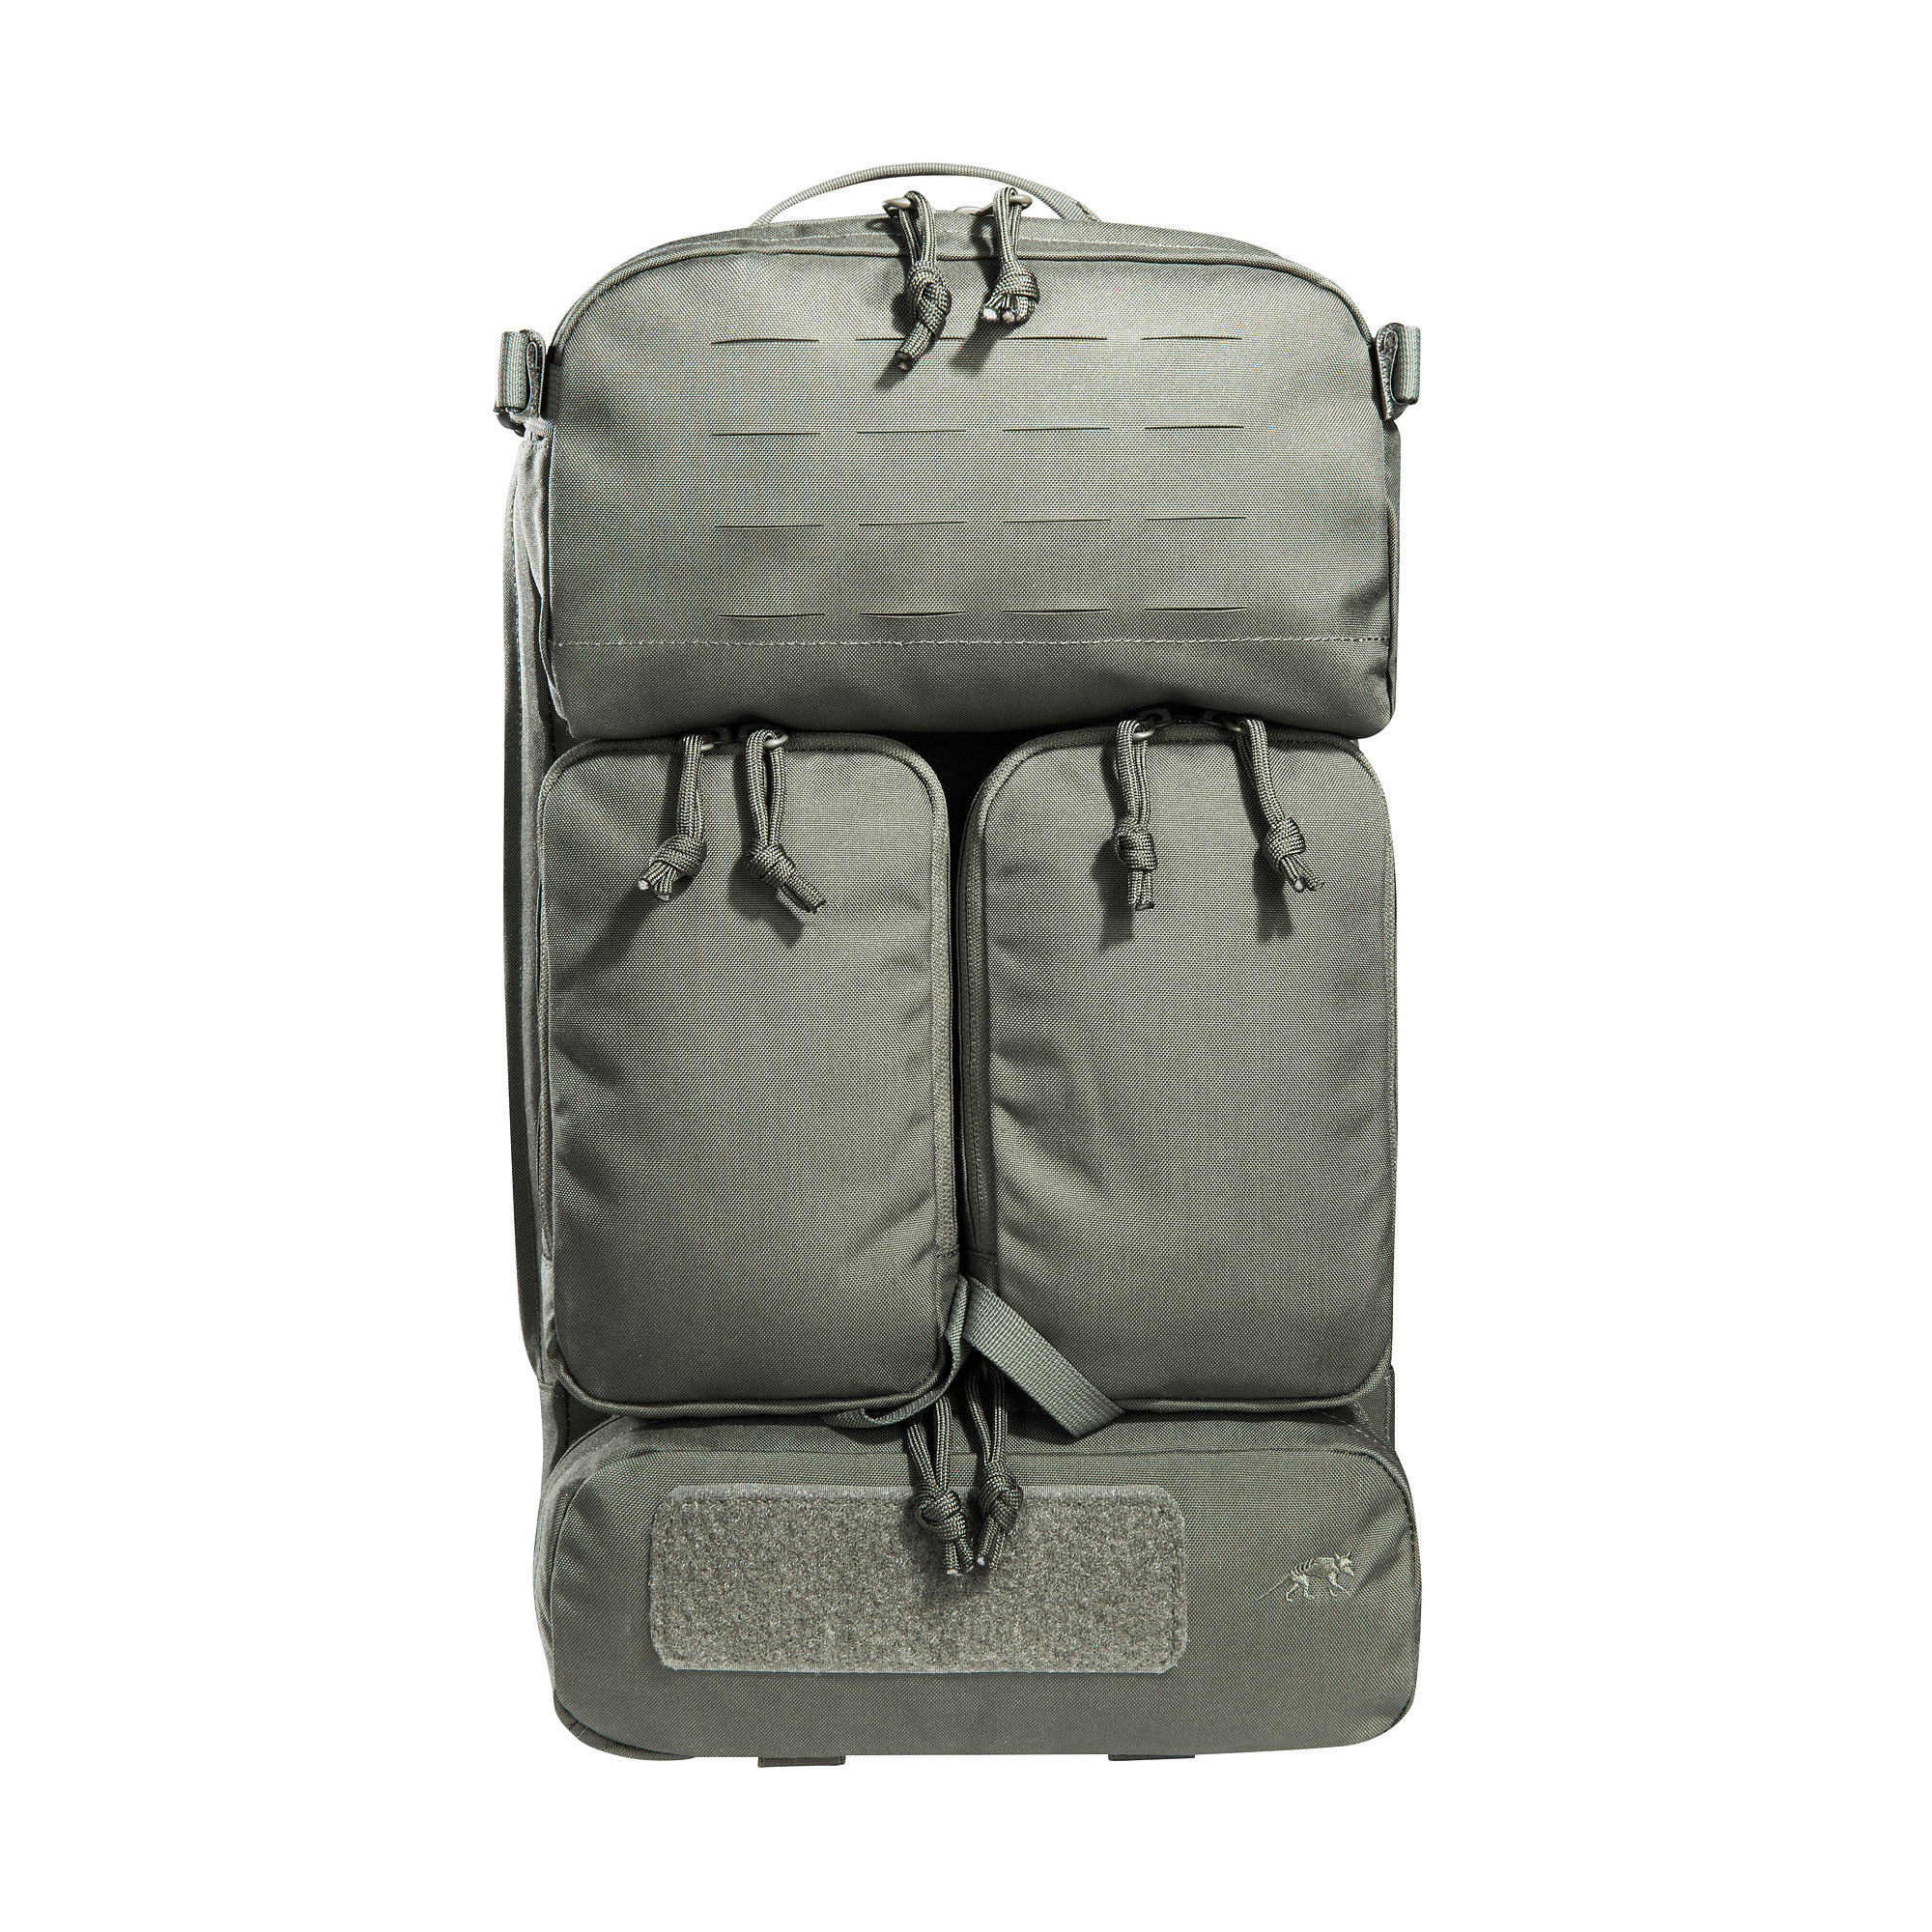 TT Modular Gunners Pack IRR - Modular deployment backpack